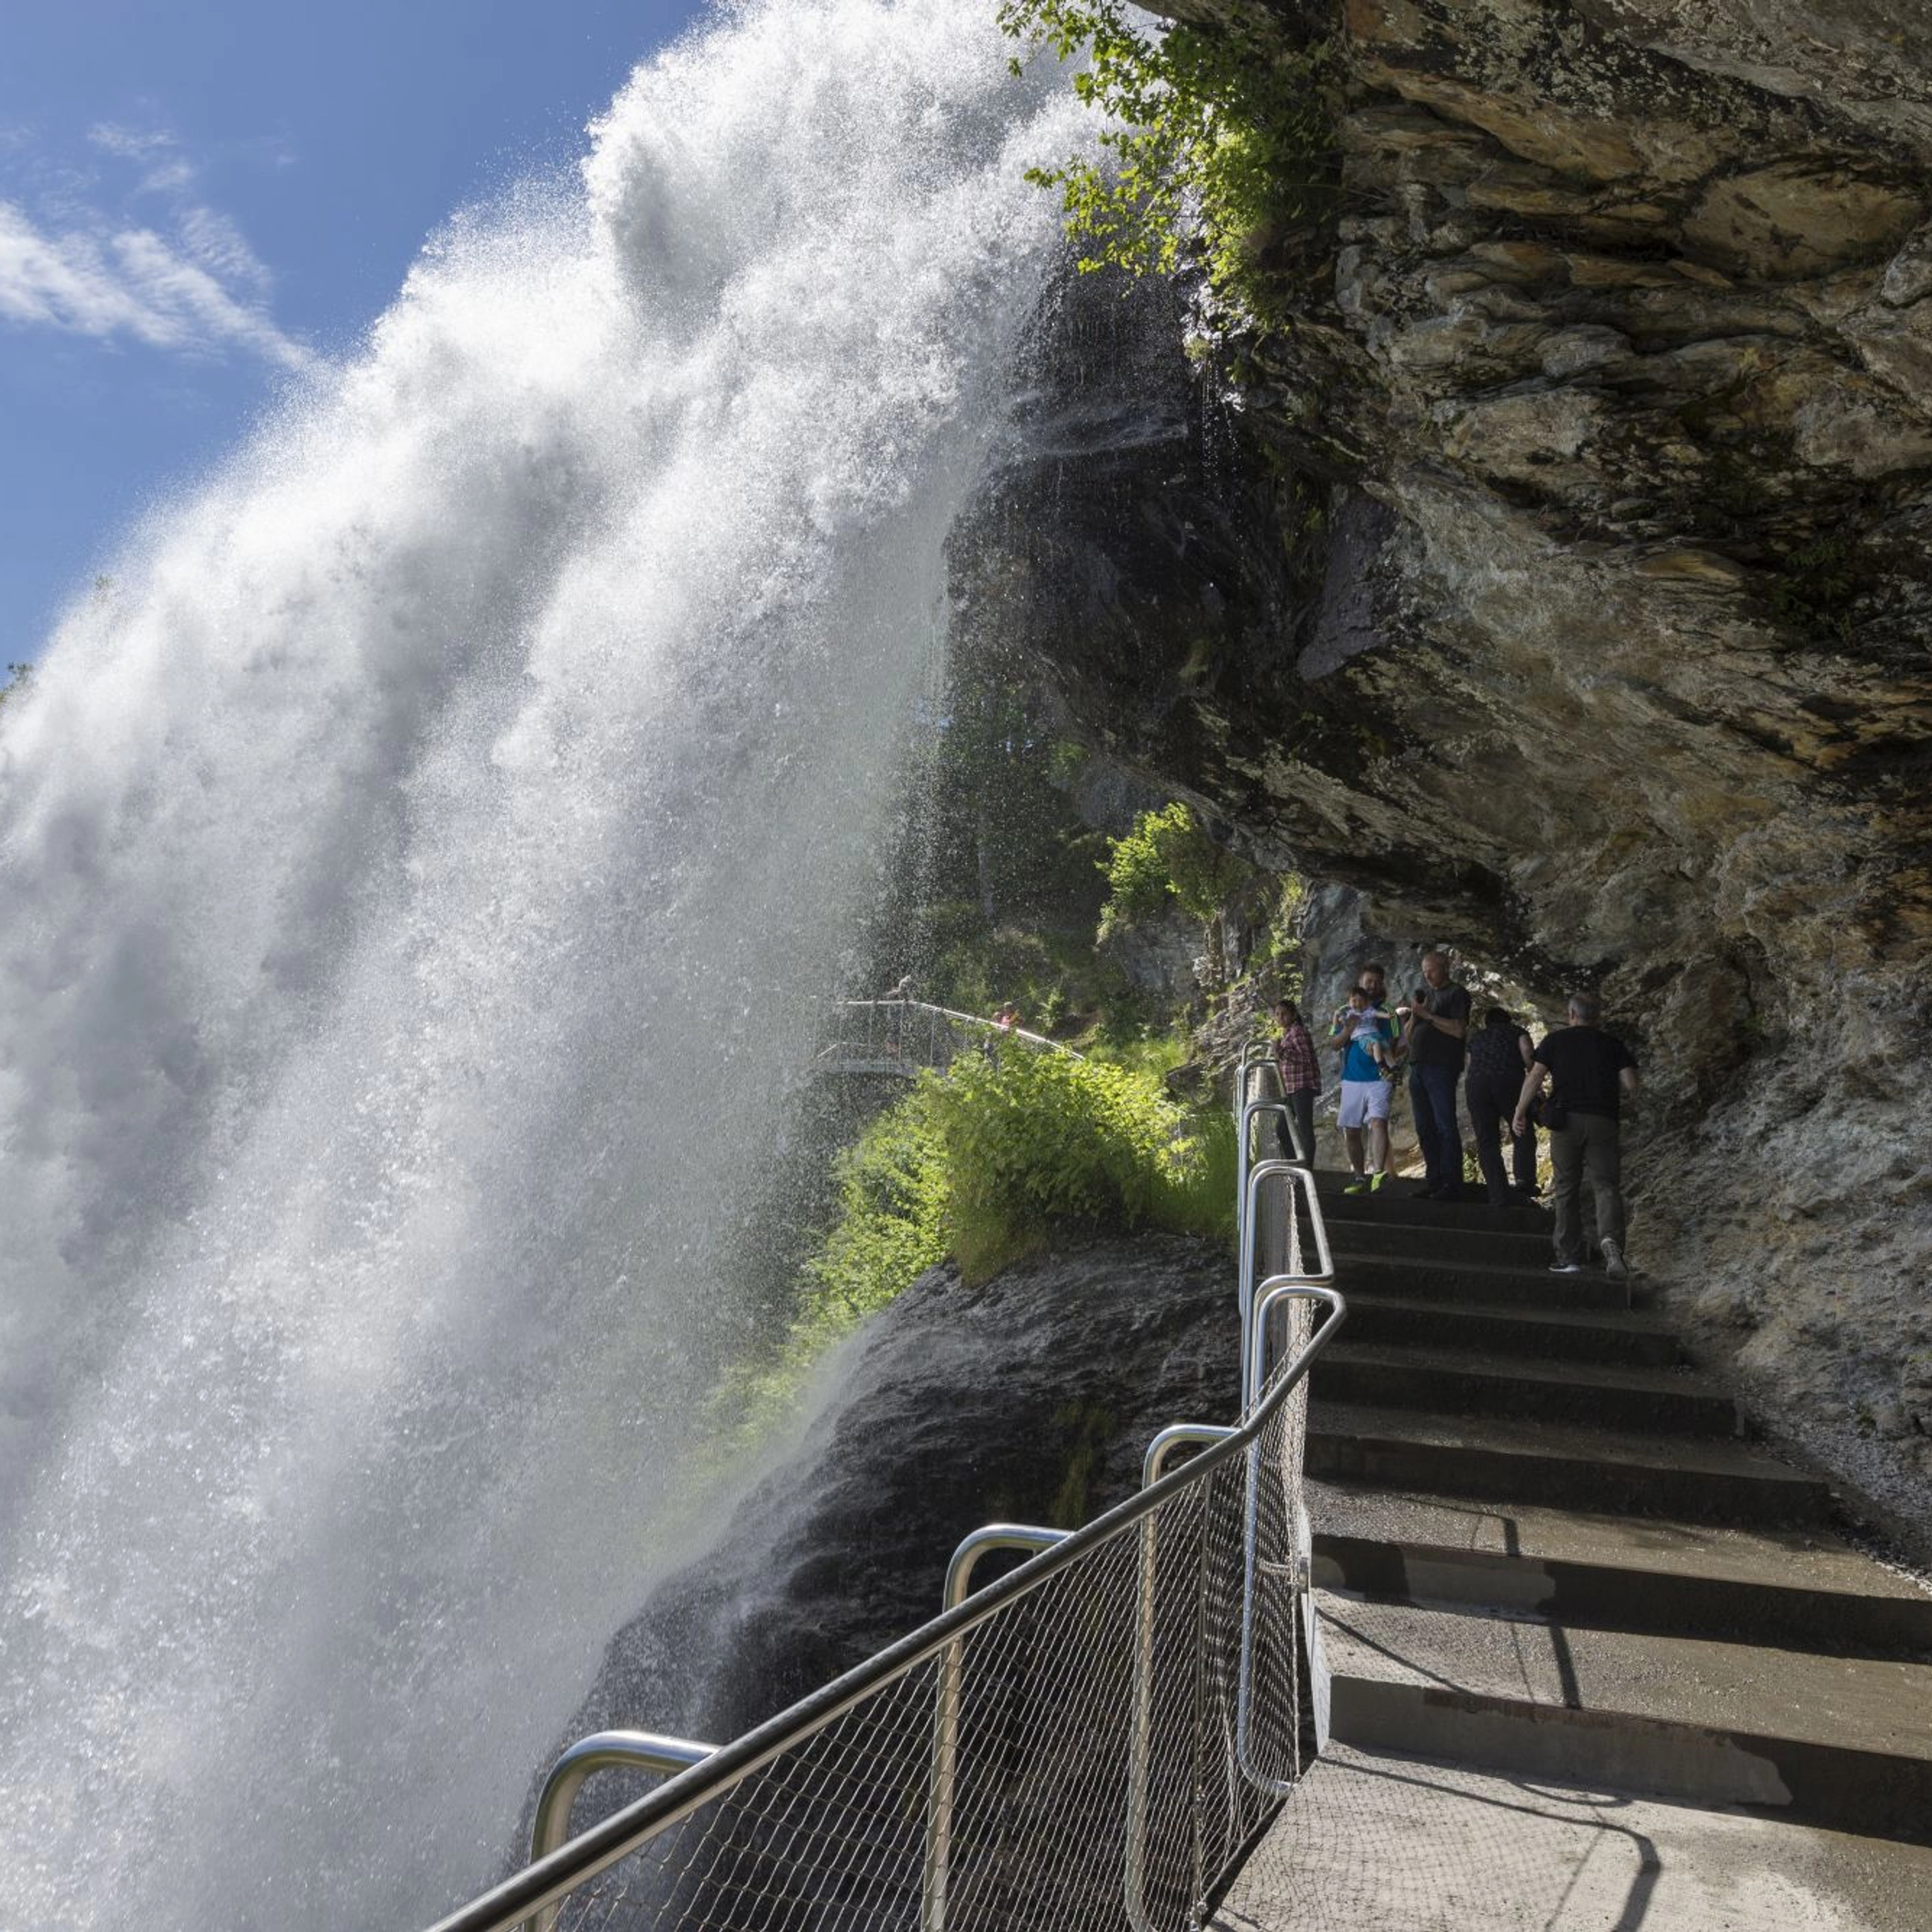 Steinsdalsfossen waterfall in Norheimsund, Hardanger, Norway